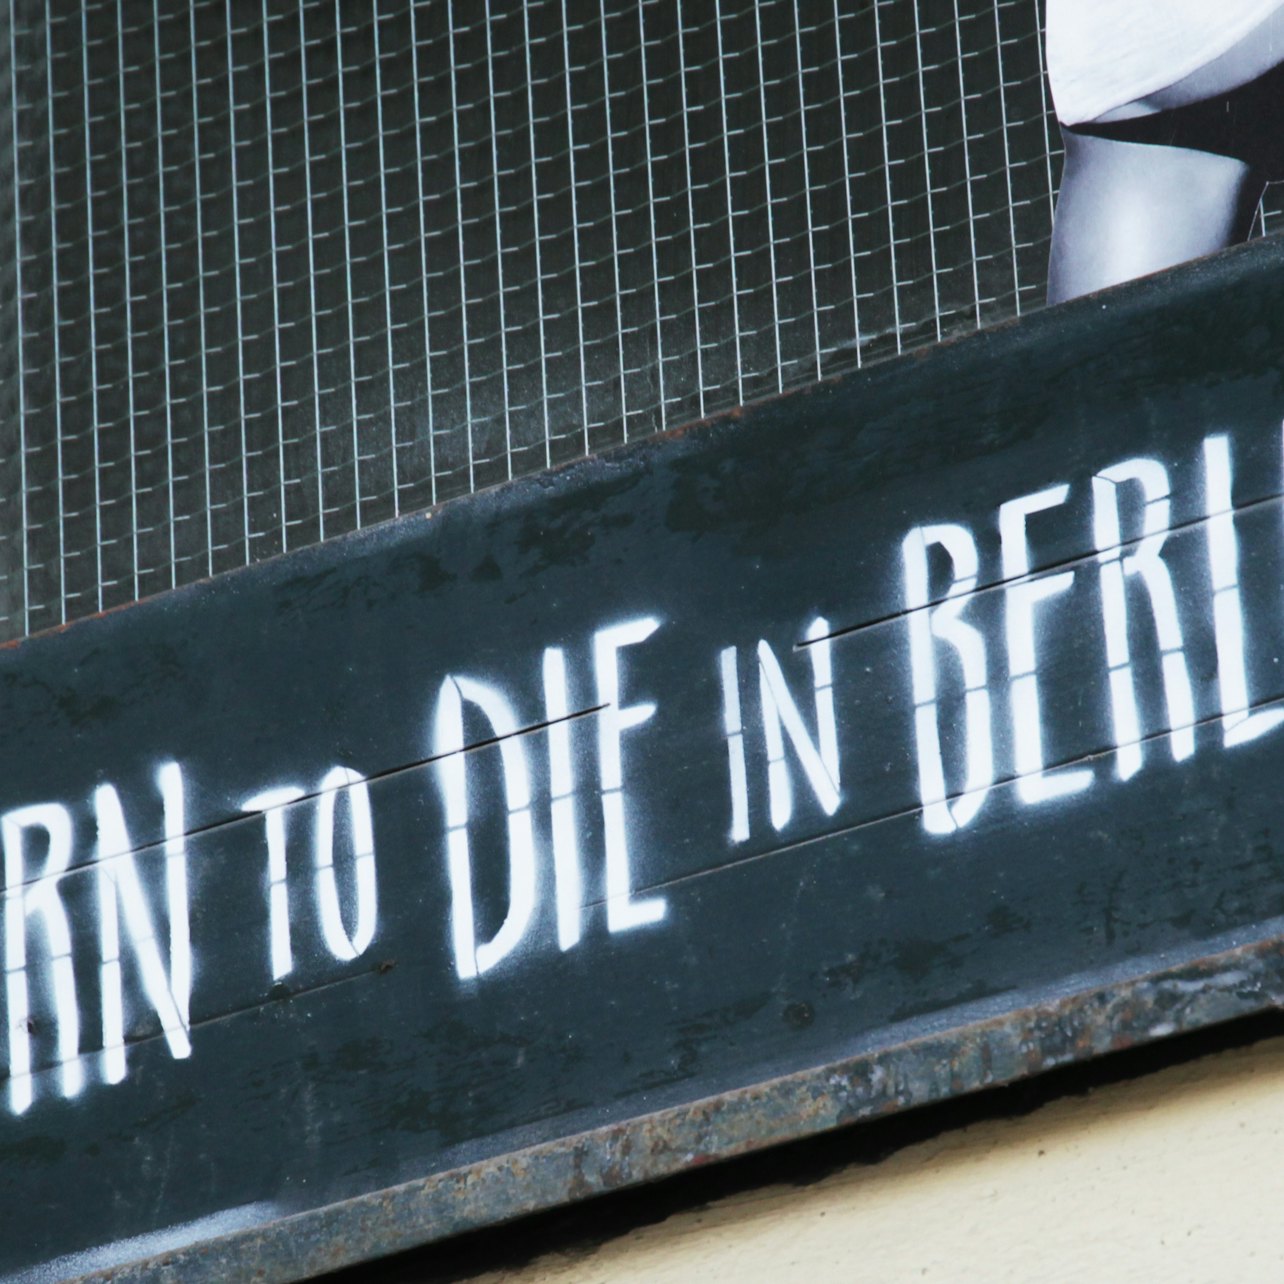 Berlin: Street Art Tour - Accommodations in Berlin